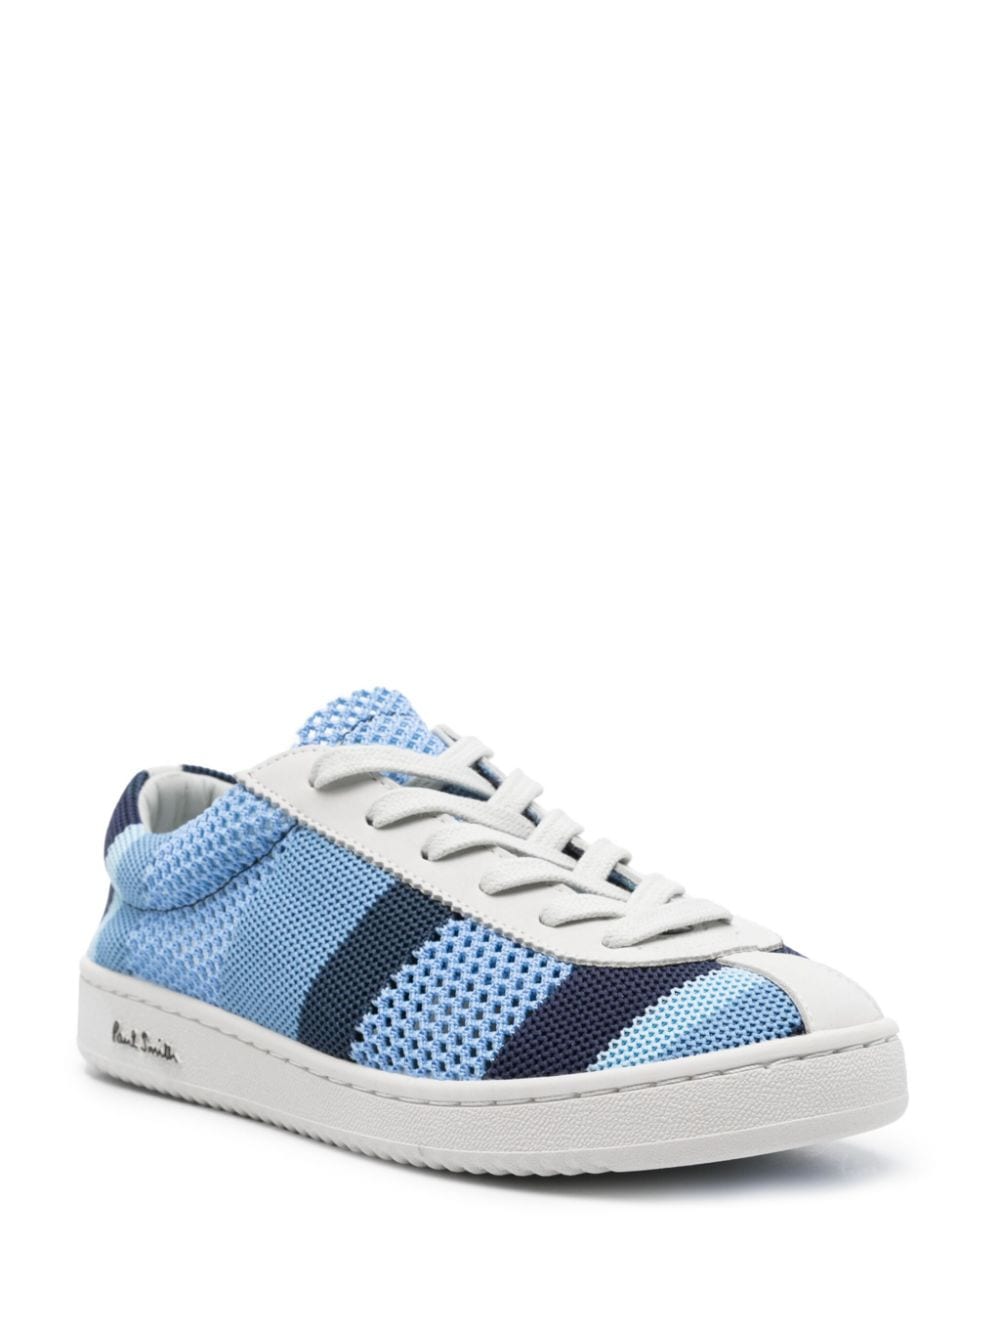 Paul Smith Opengebreide sneakers - Blauw